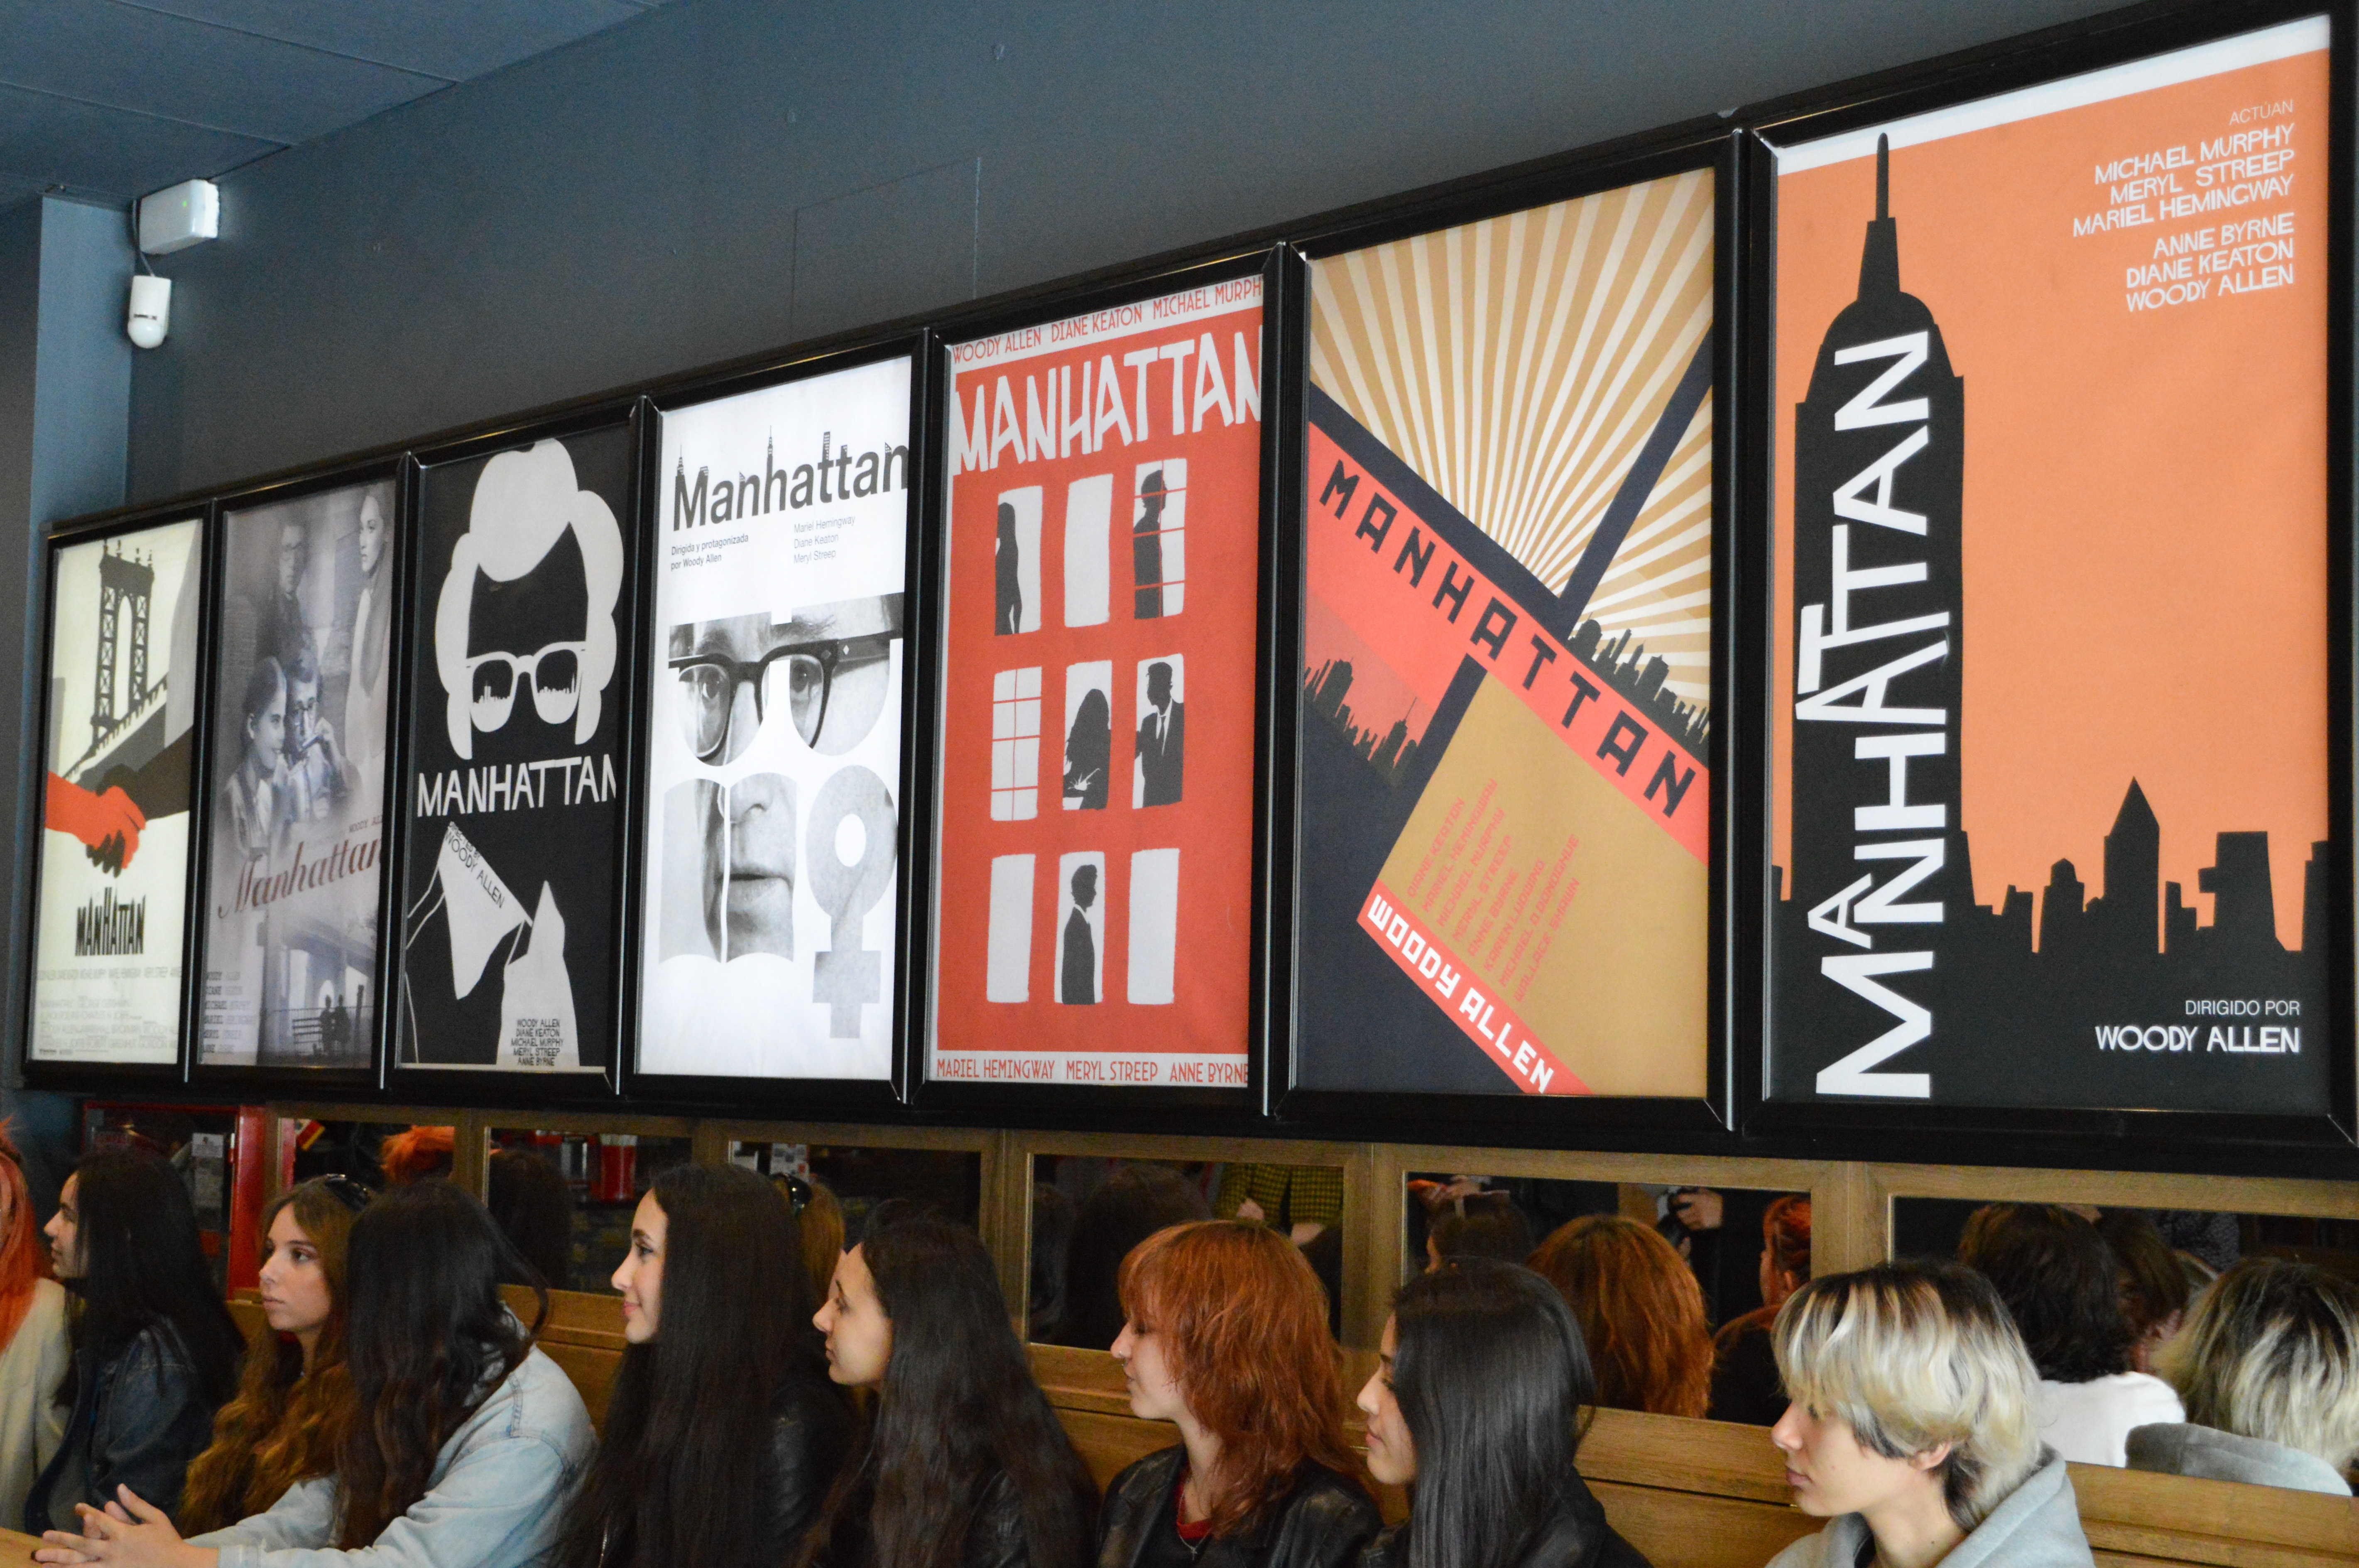 Estudiantes de Bellas Artes recrean una exposición con carteles inspirados en películas ‘La Luna’ y ‘Manhattan’